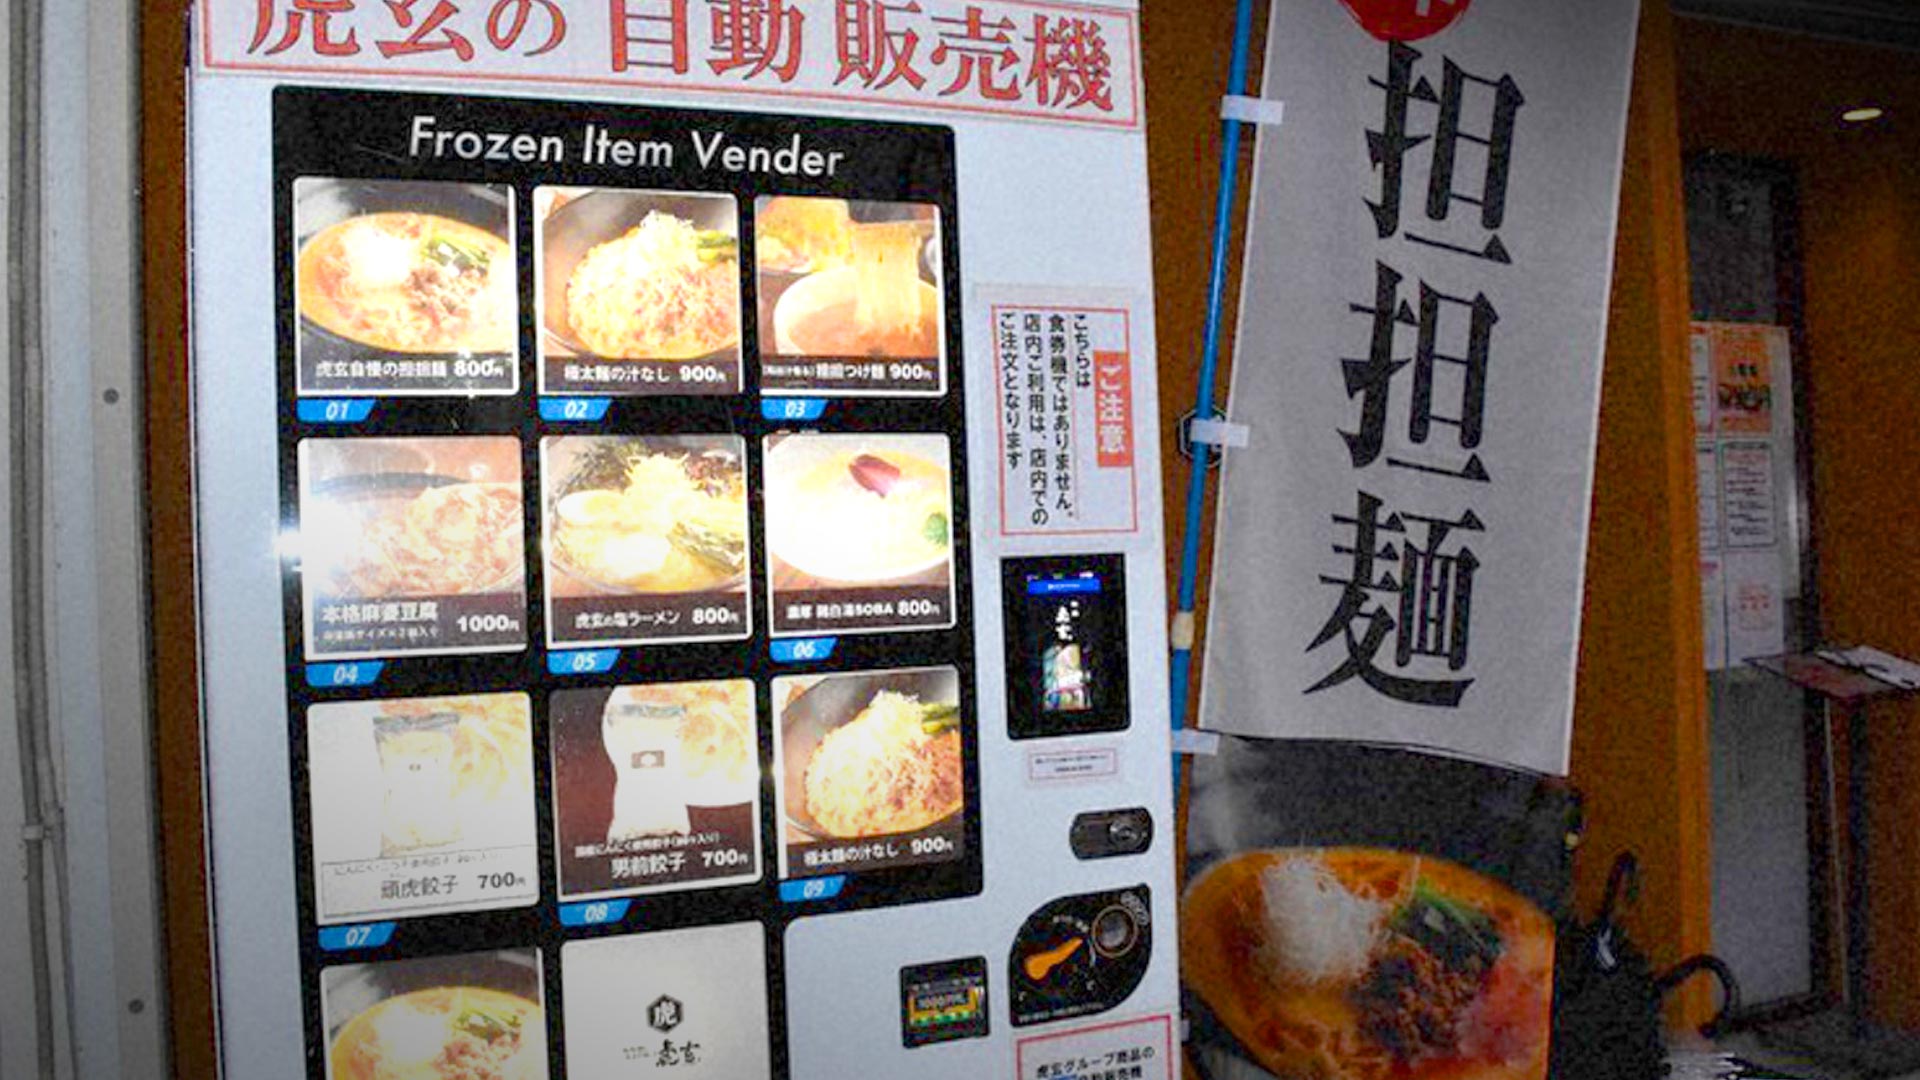 vending machine makanan beku